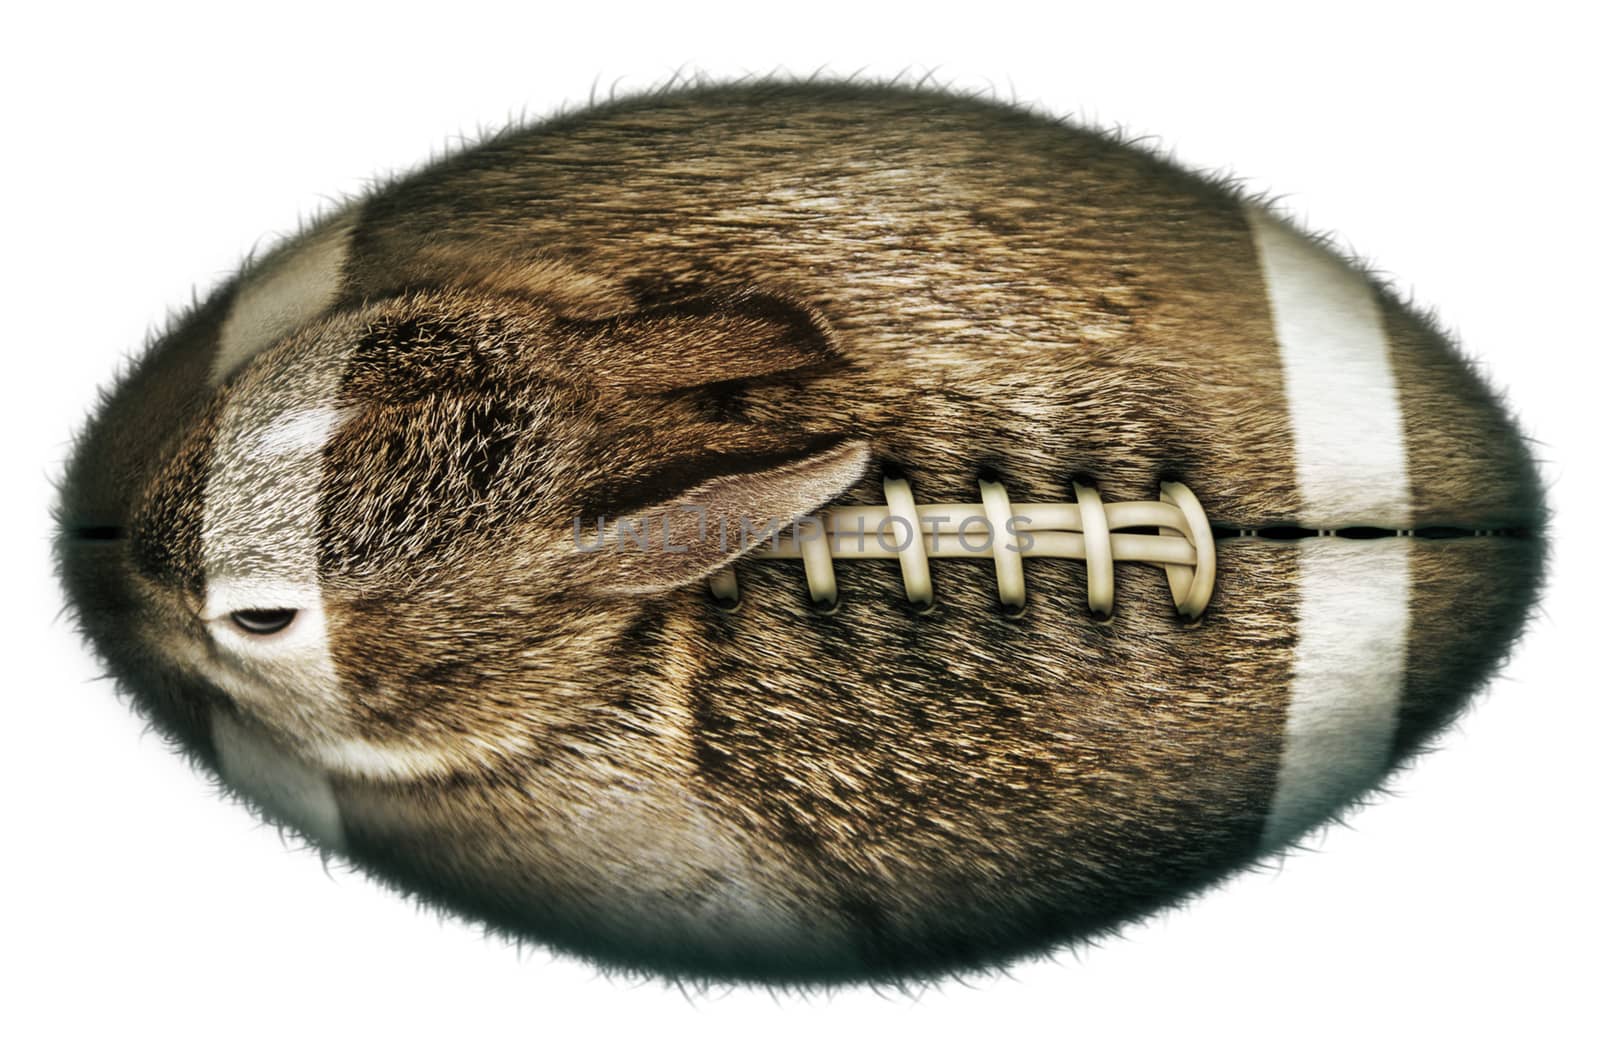 Digital illustration of a football-shaped rabbit.